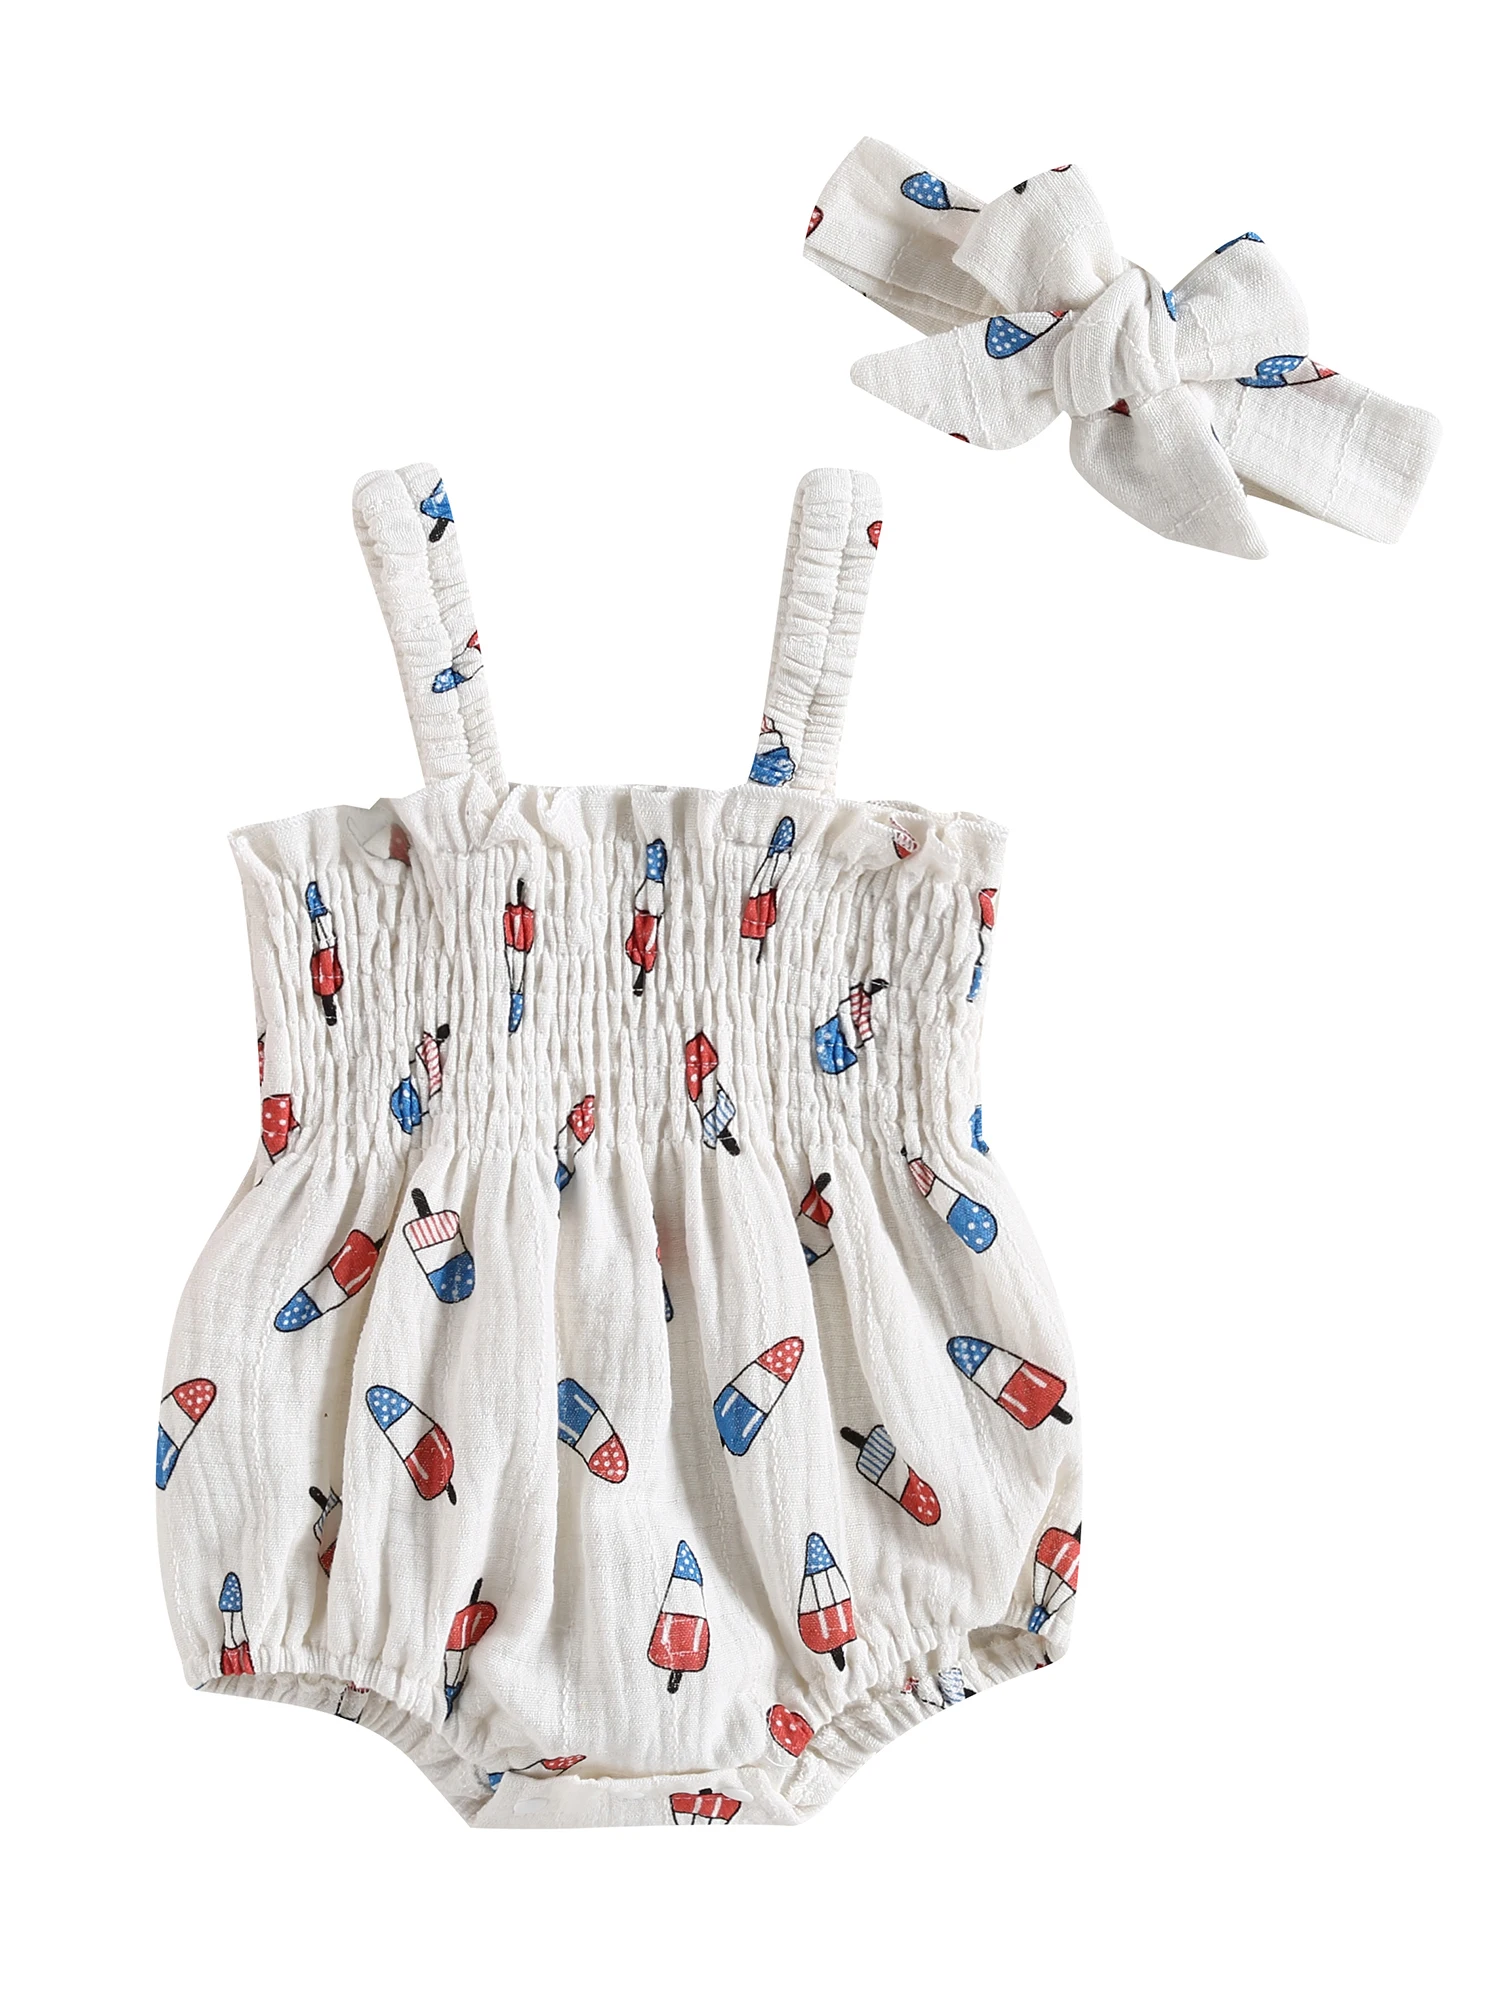 

Louatui Infant Baby Girls Summer Romper Dress Newborn Plaid Floral Sunsuit Clothes Playsuit Jumpsuits 0-24 Months